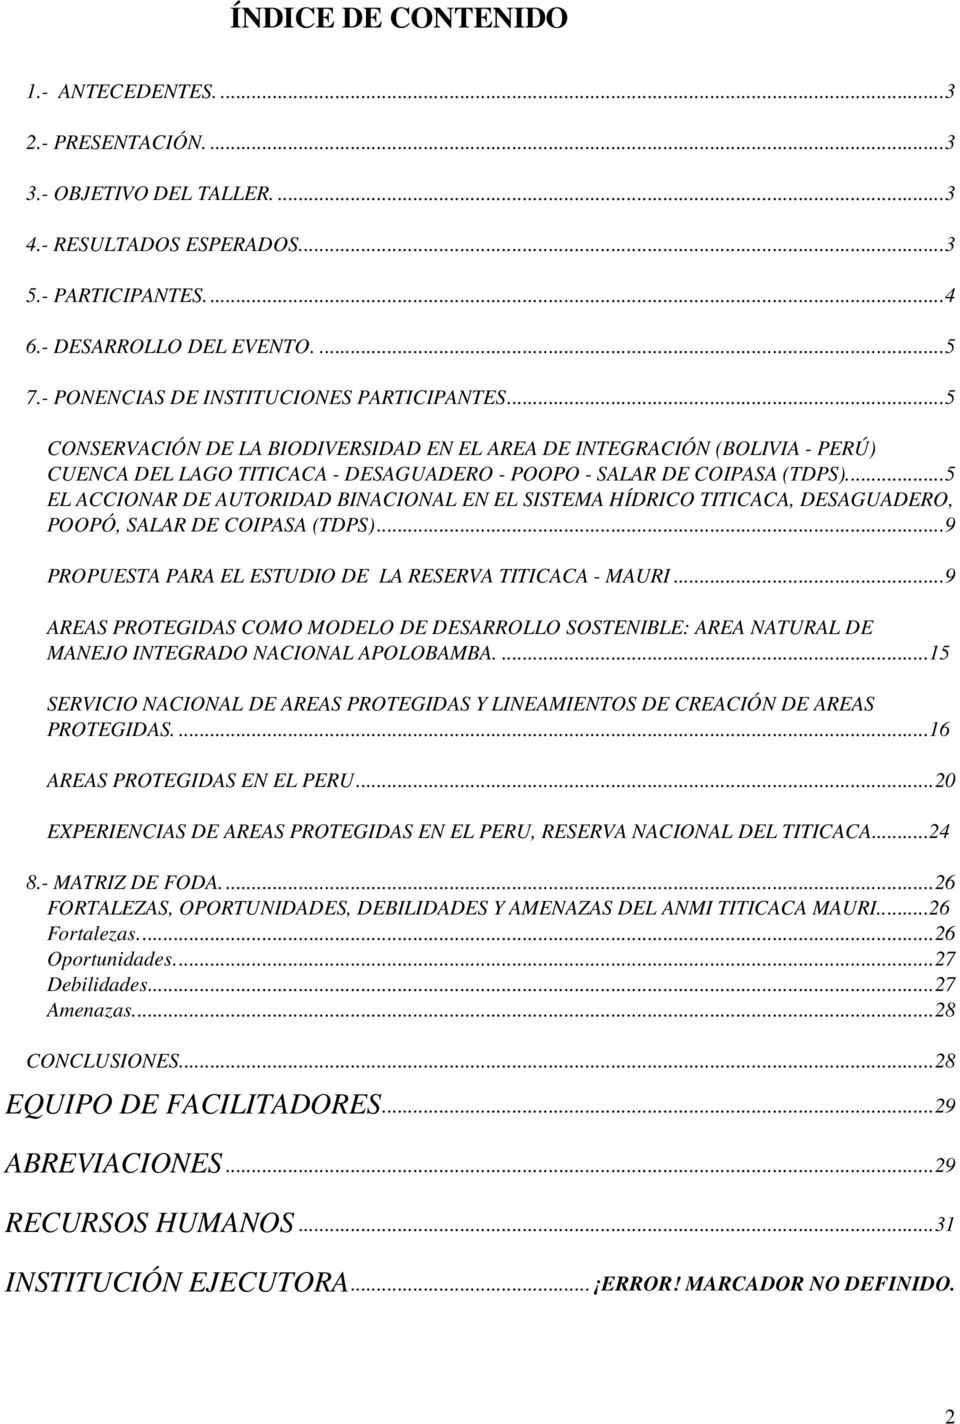 ..5 EL ACCIONAR DE AUTORIDAD BINACIONAL EN EL SISTEMA HÍDRICO TITICACA, DESAGUADERO, POOPÓ, SALAR DE COIPASA (TDPS)...9 PROPUESTA PARA EL ESTUDIO DE LA RESERVA TITICACA - MAURI.